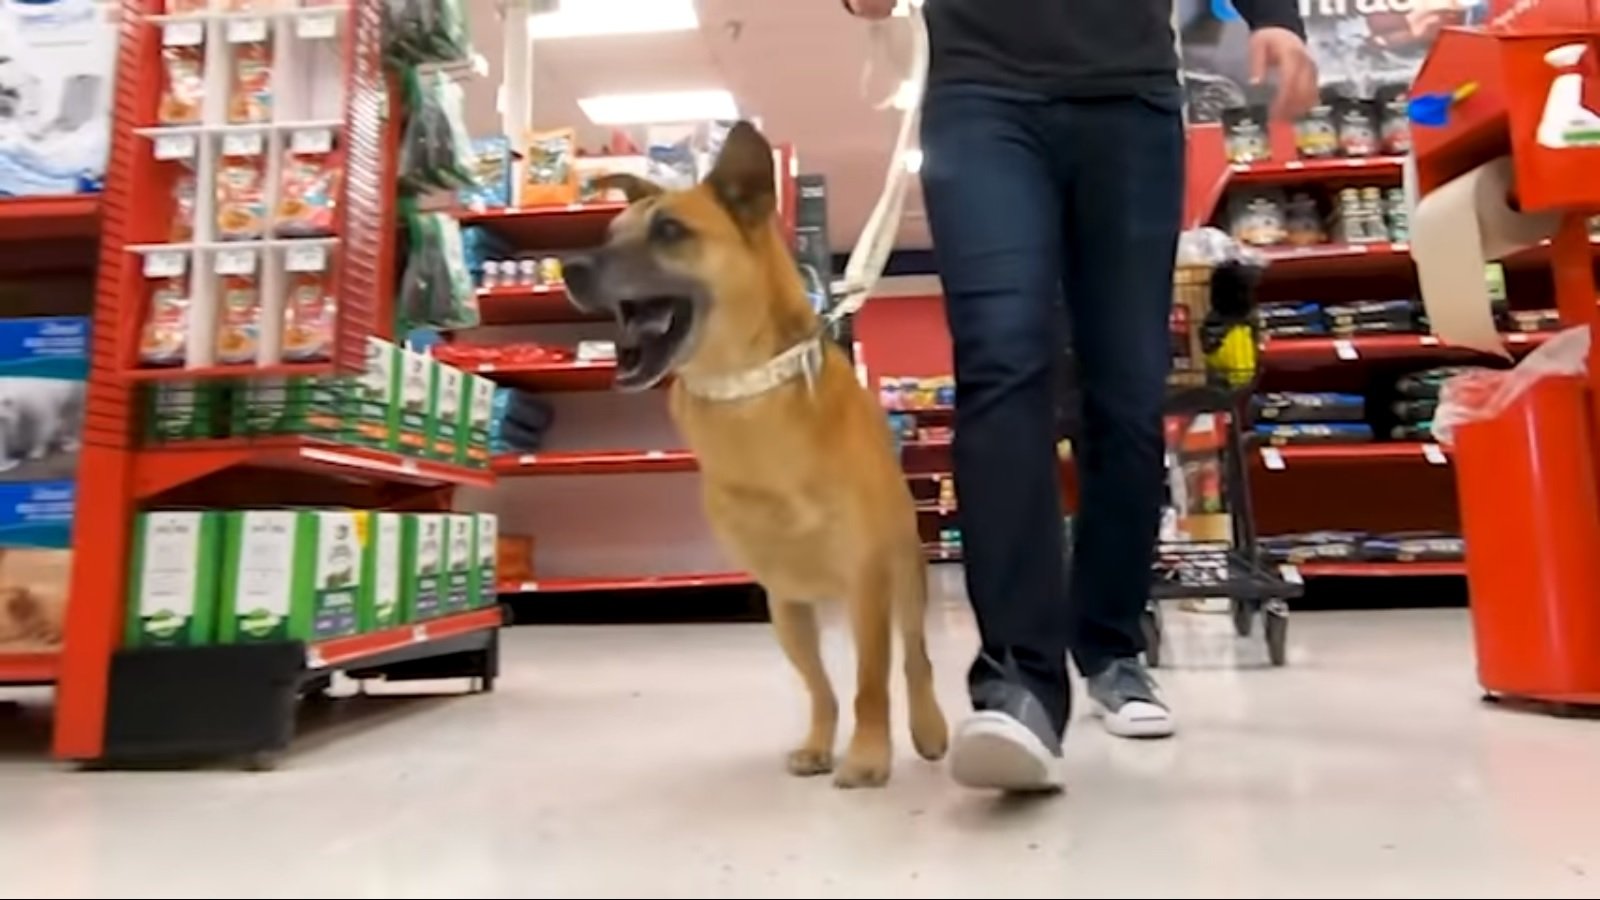 King camina emocionado con sus tres patas por la tienda de mascotas. Fuente: YouTube / Bam Bi